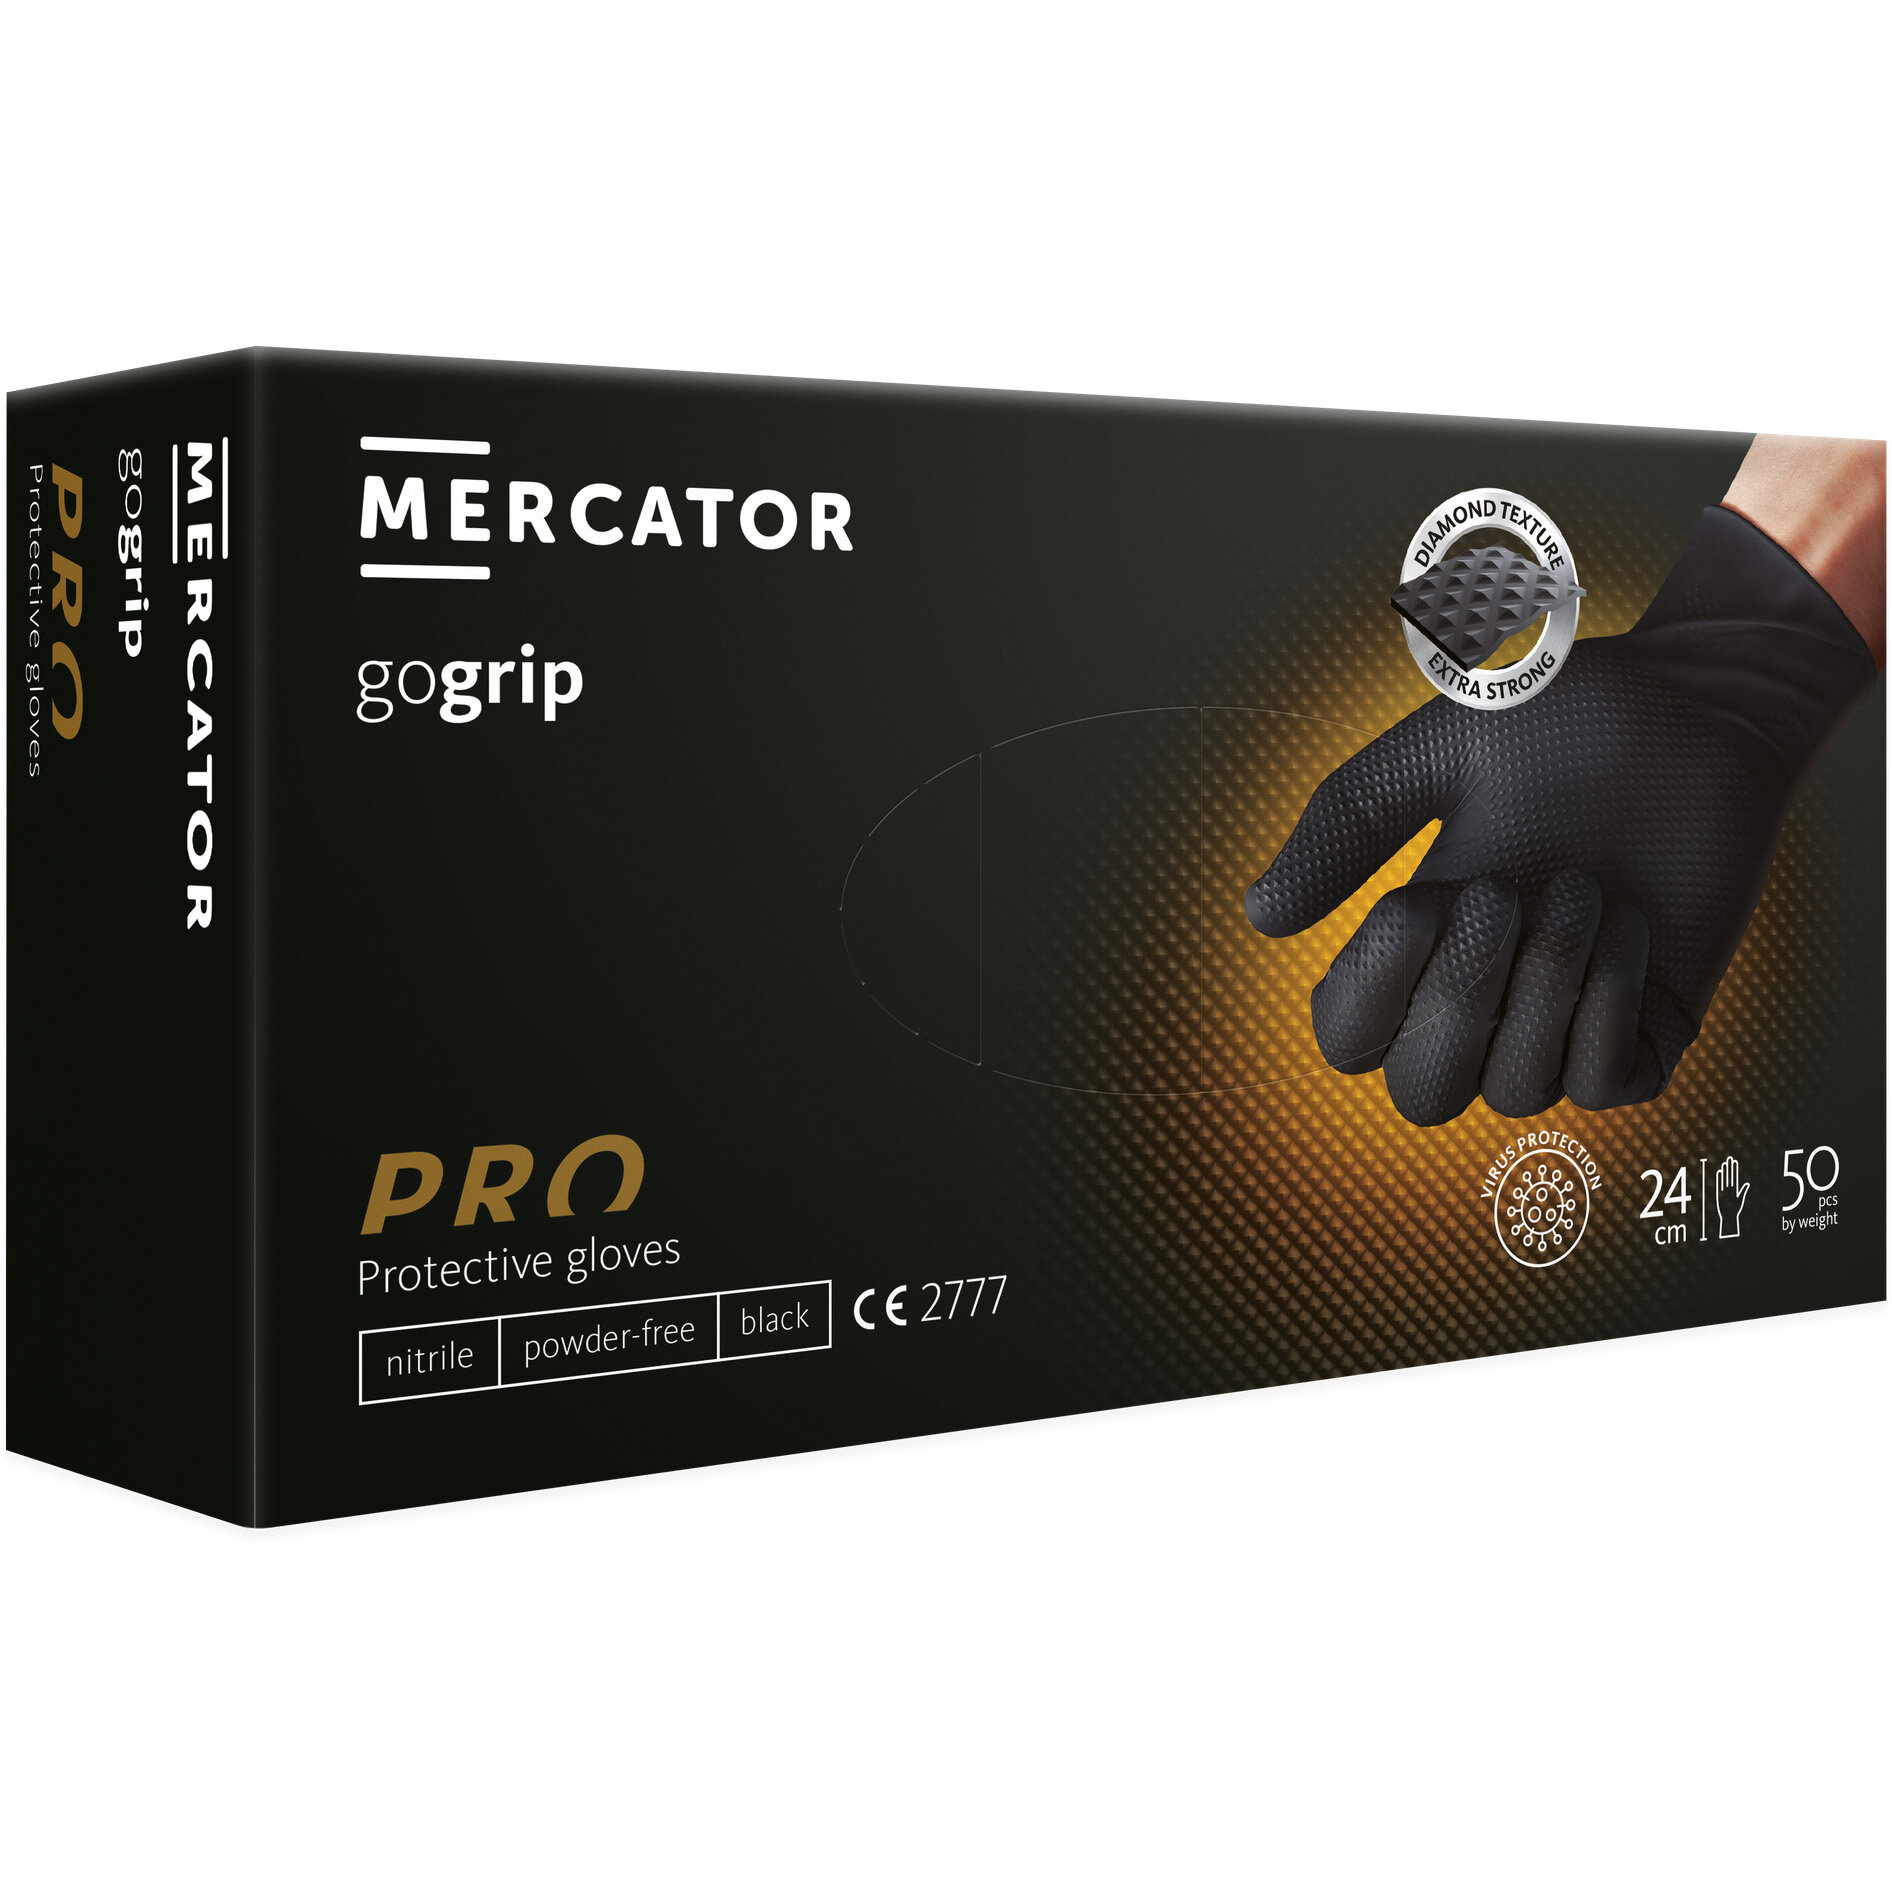 Mercator GoGrip črne nitrilne rokavice s teksturo XS brez prahu - 50 kosov